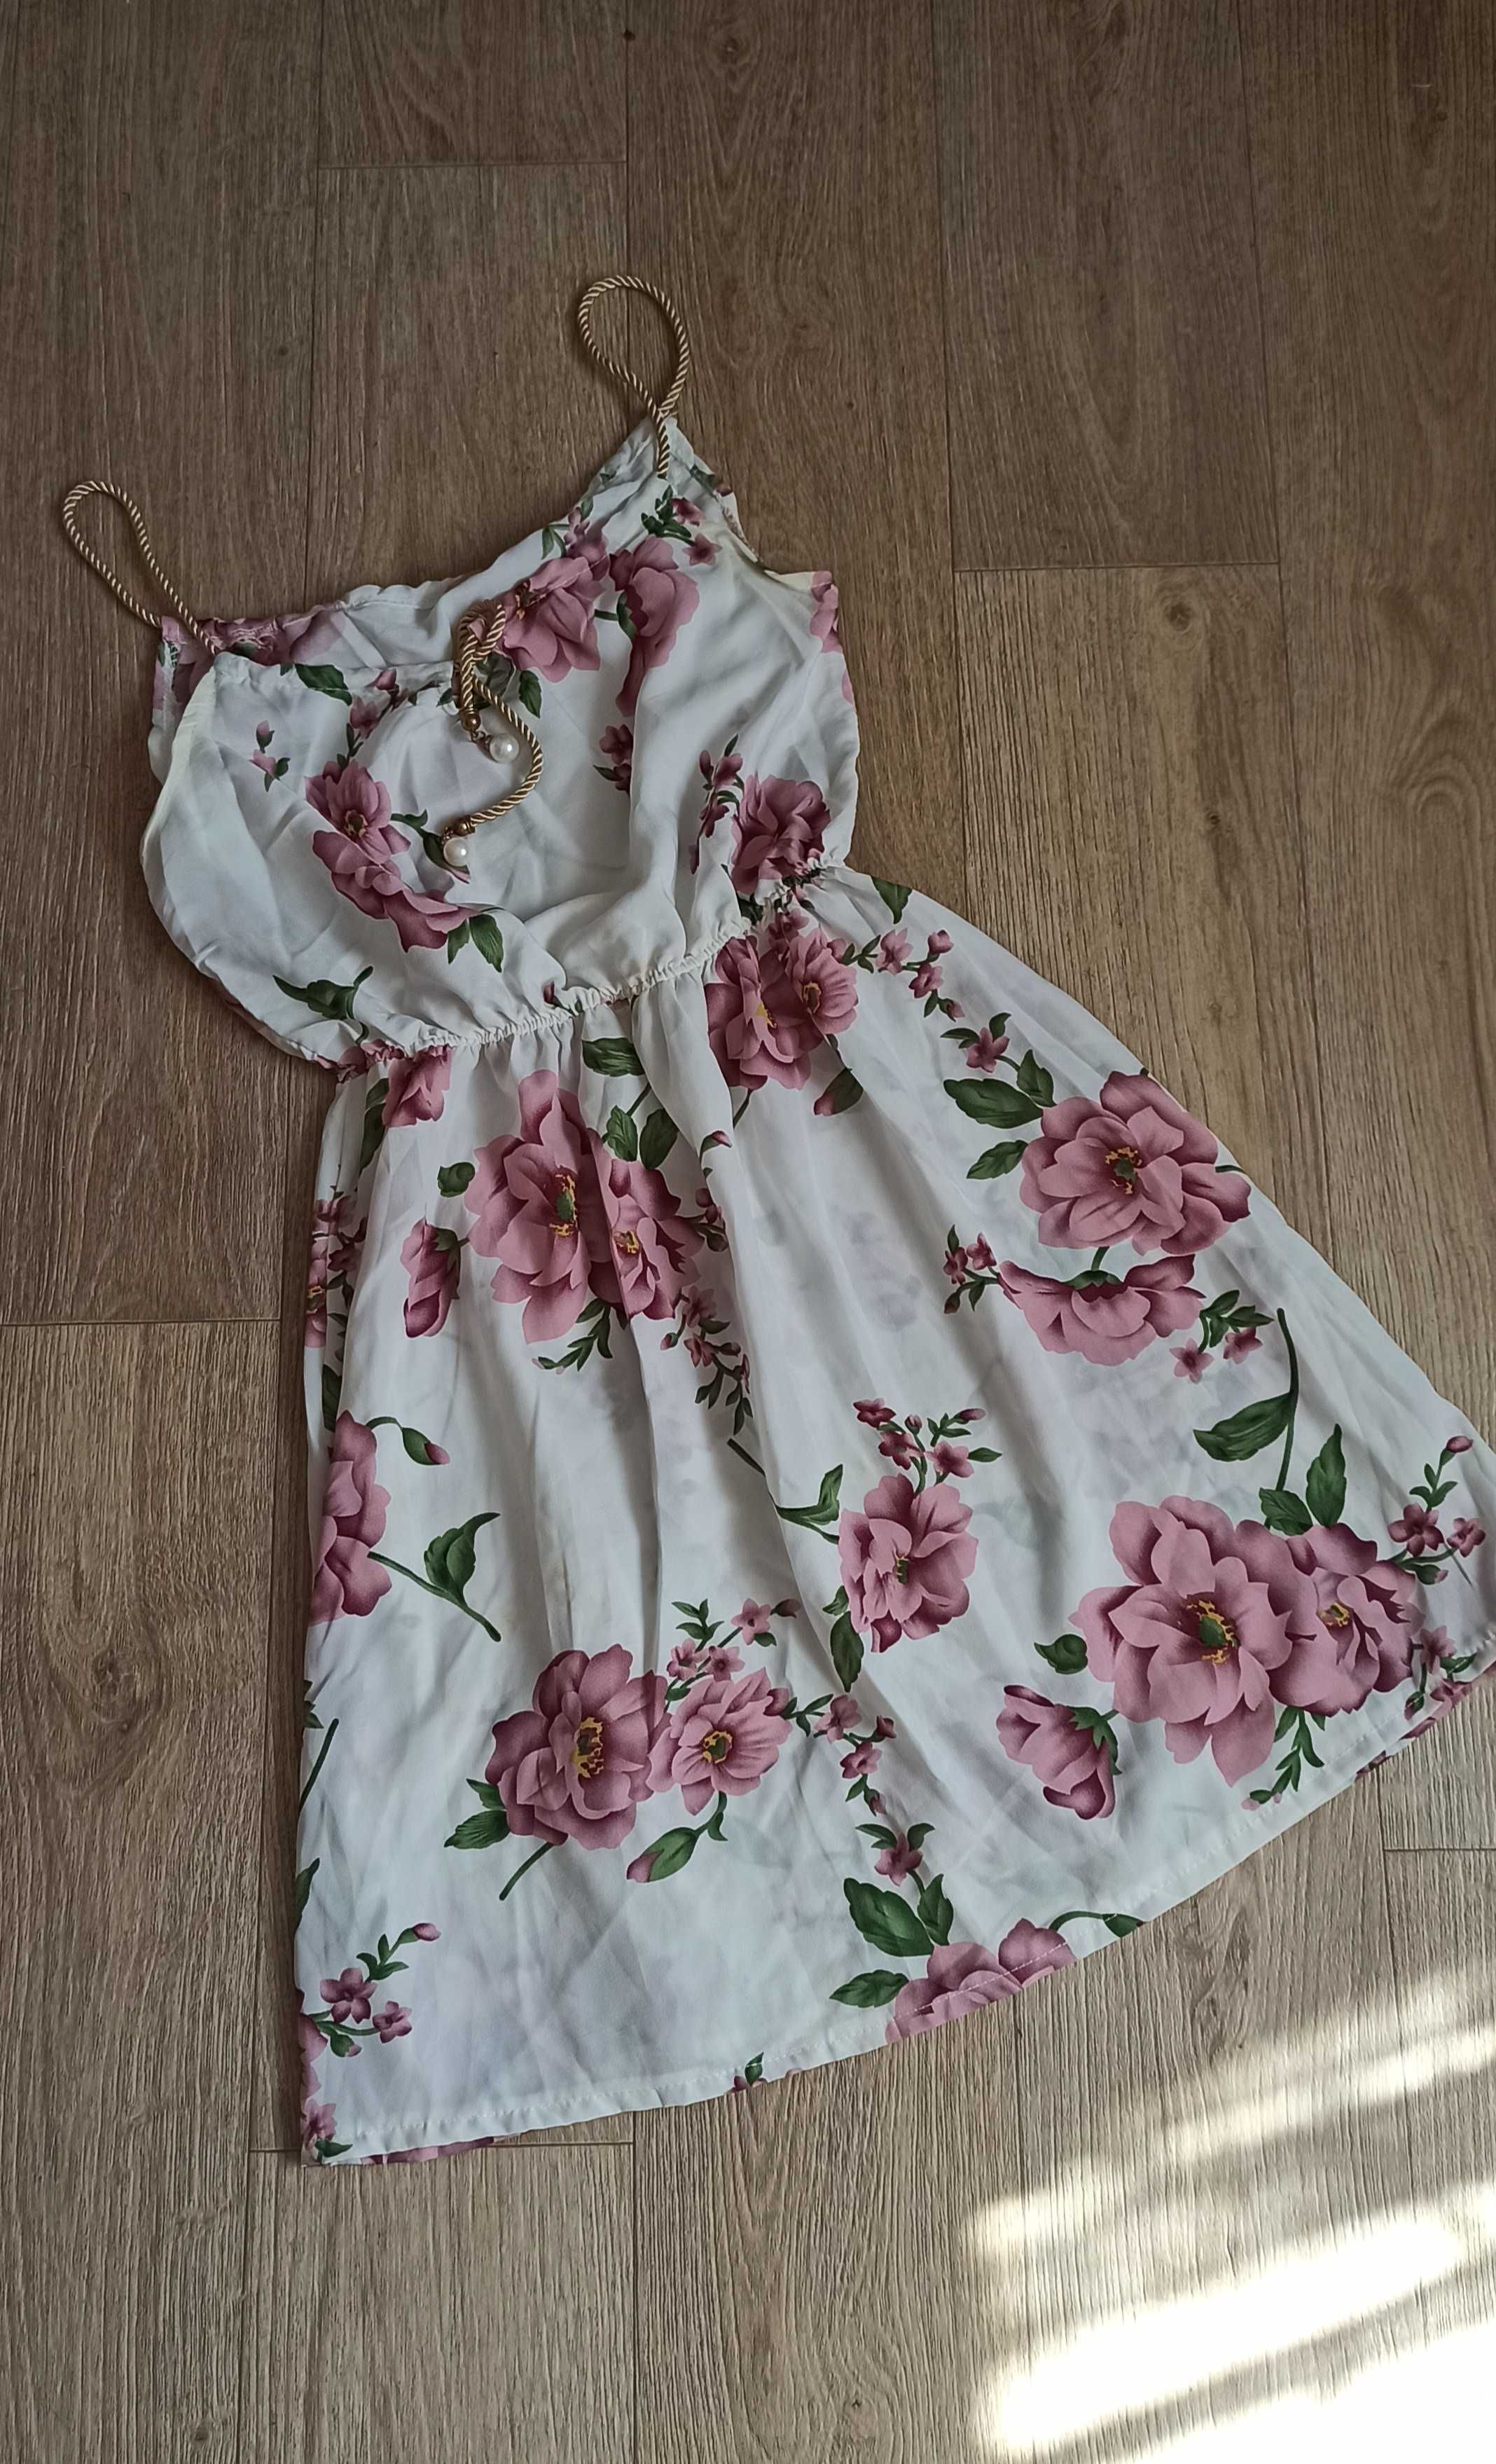 Літня сукня в квітковий принт